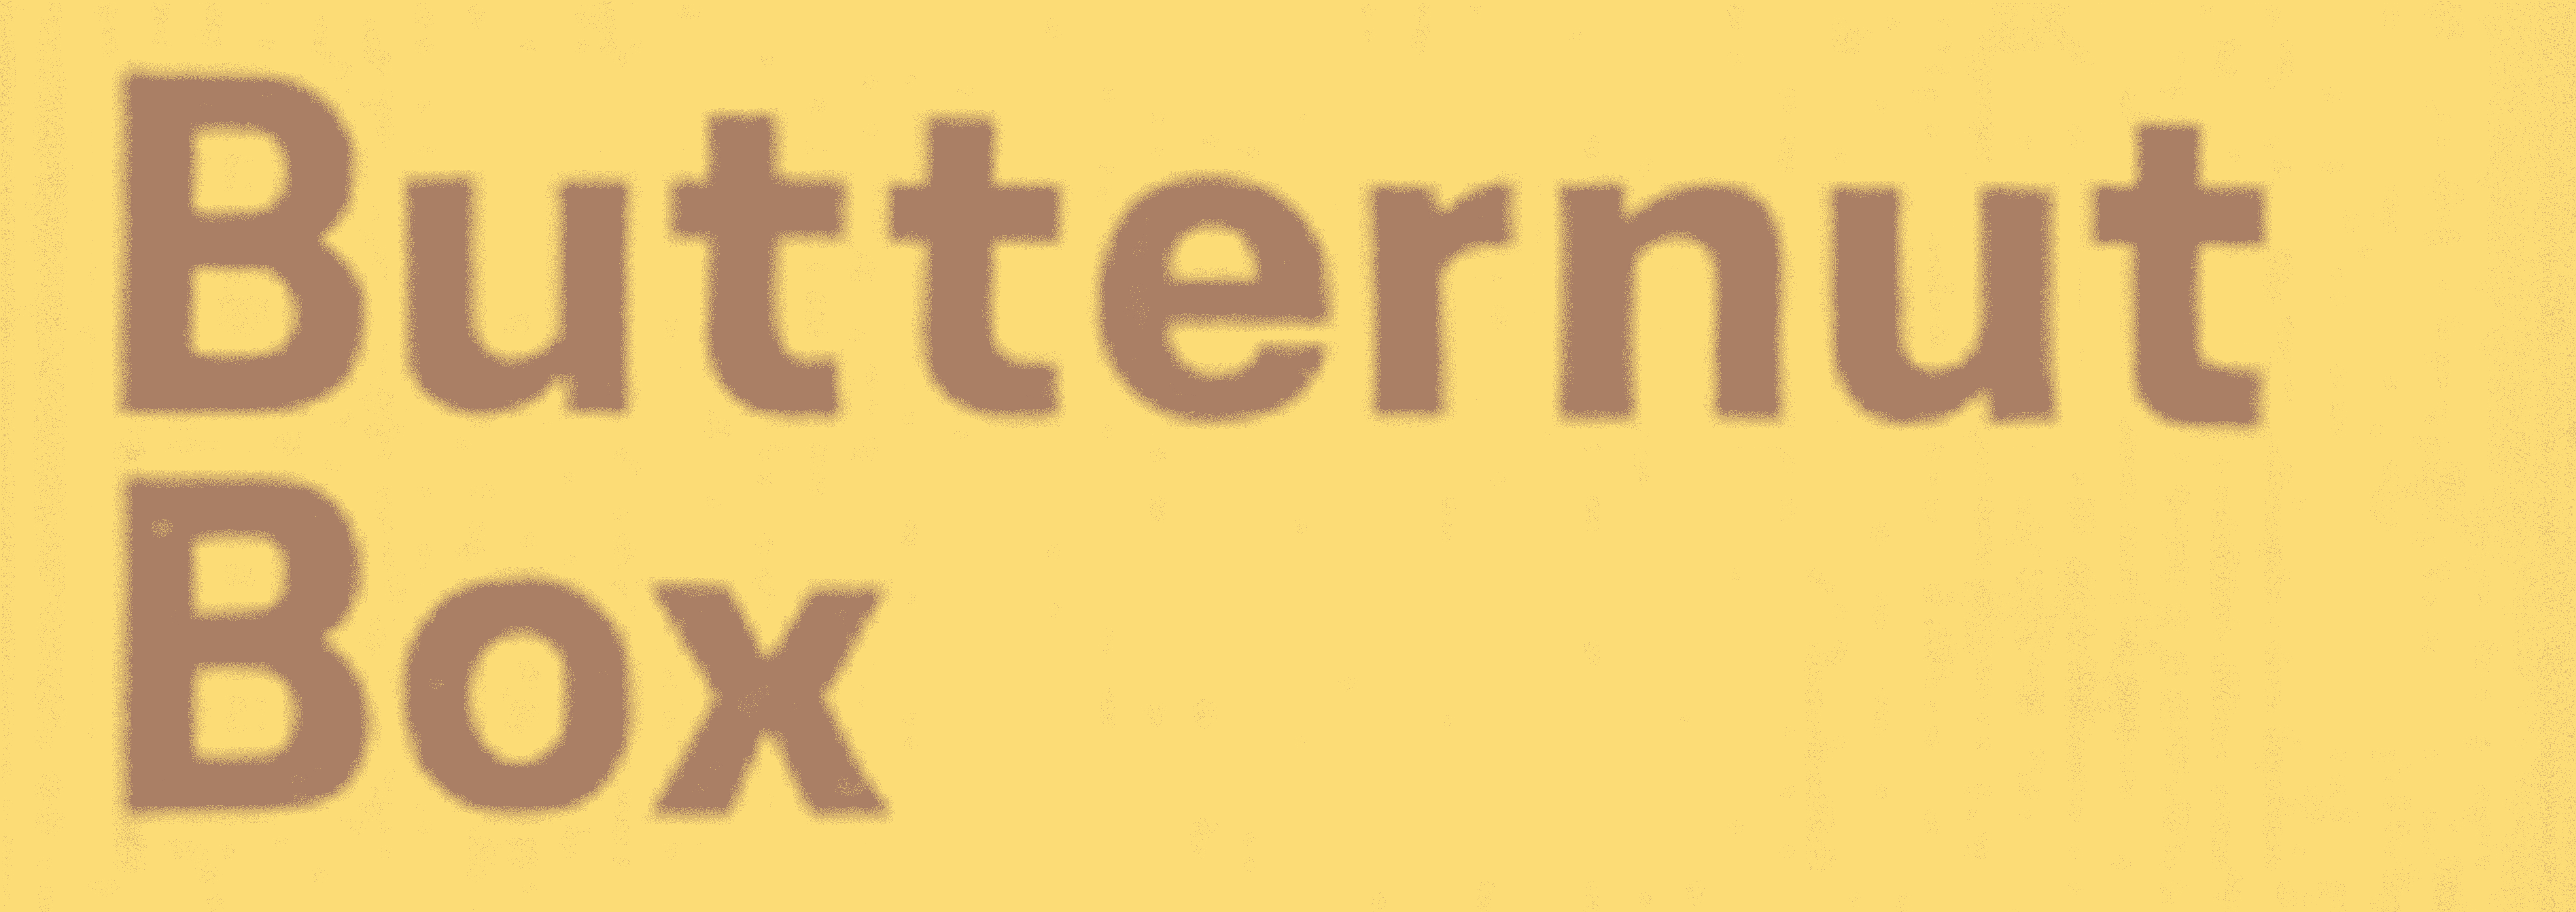 logo Butternut Box